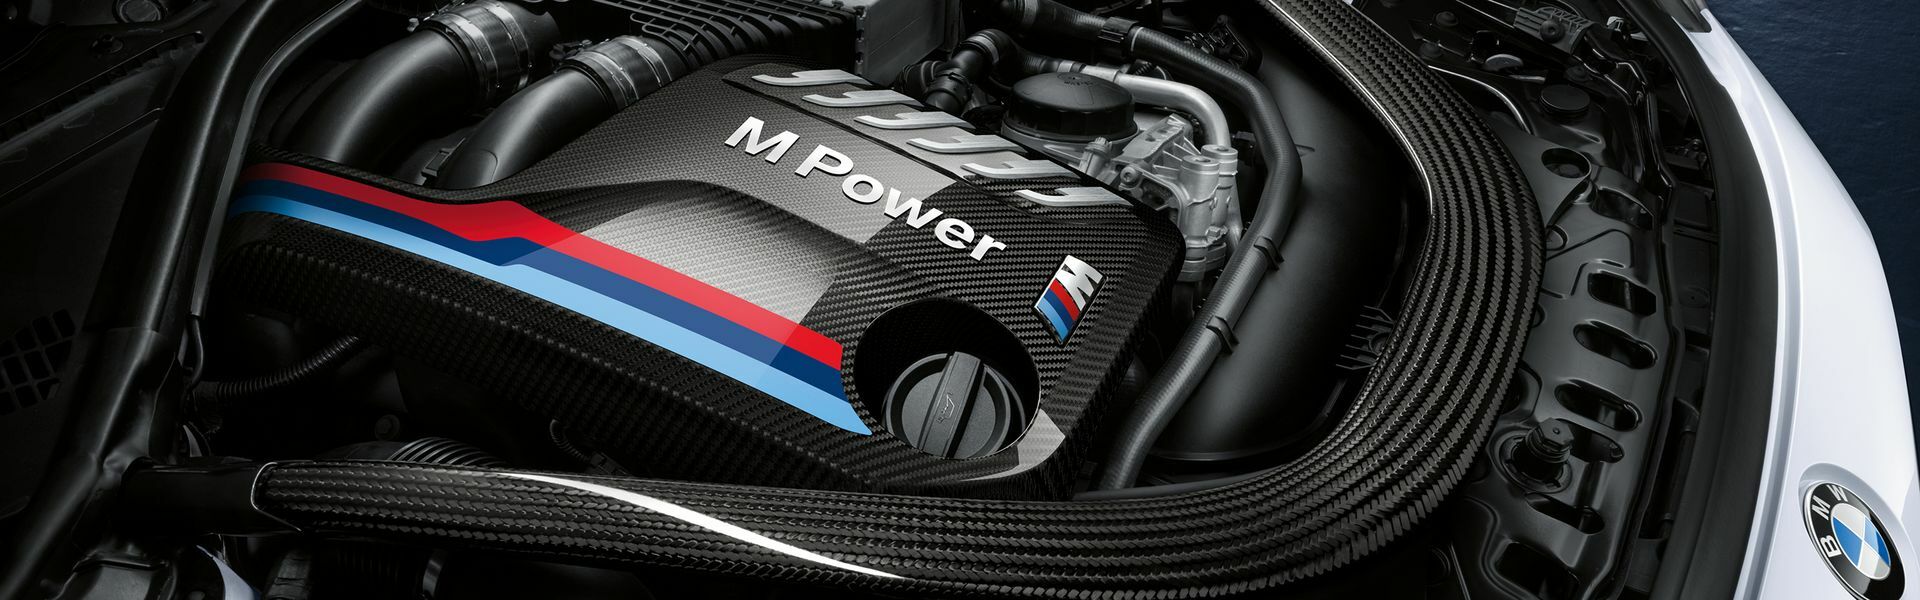 Zvýšení výkonu/ Softwarové úpravy/ Drobné performance díly pro automobil BMW M6 E63, E64